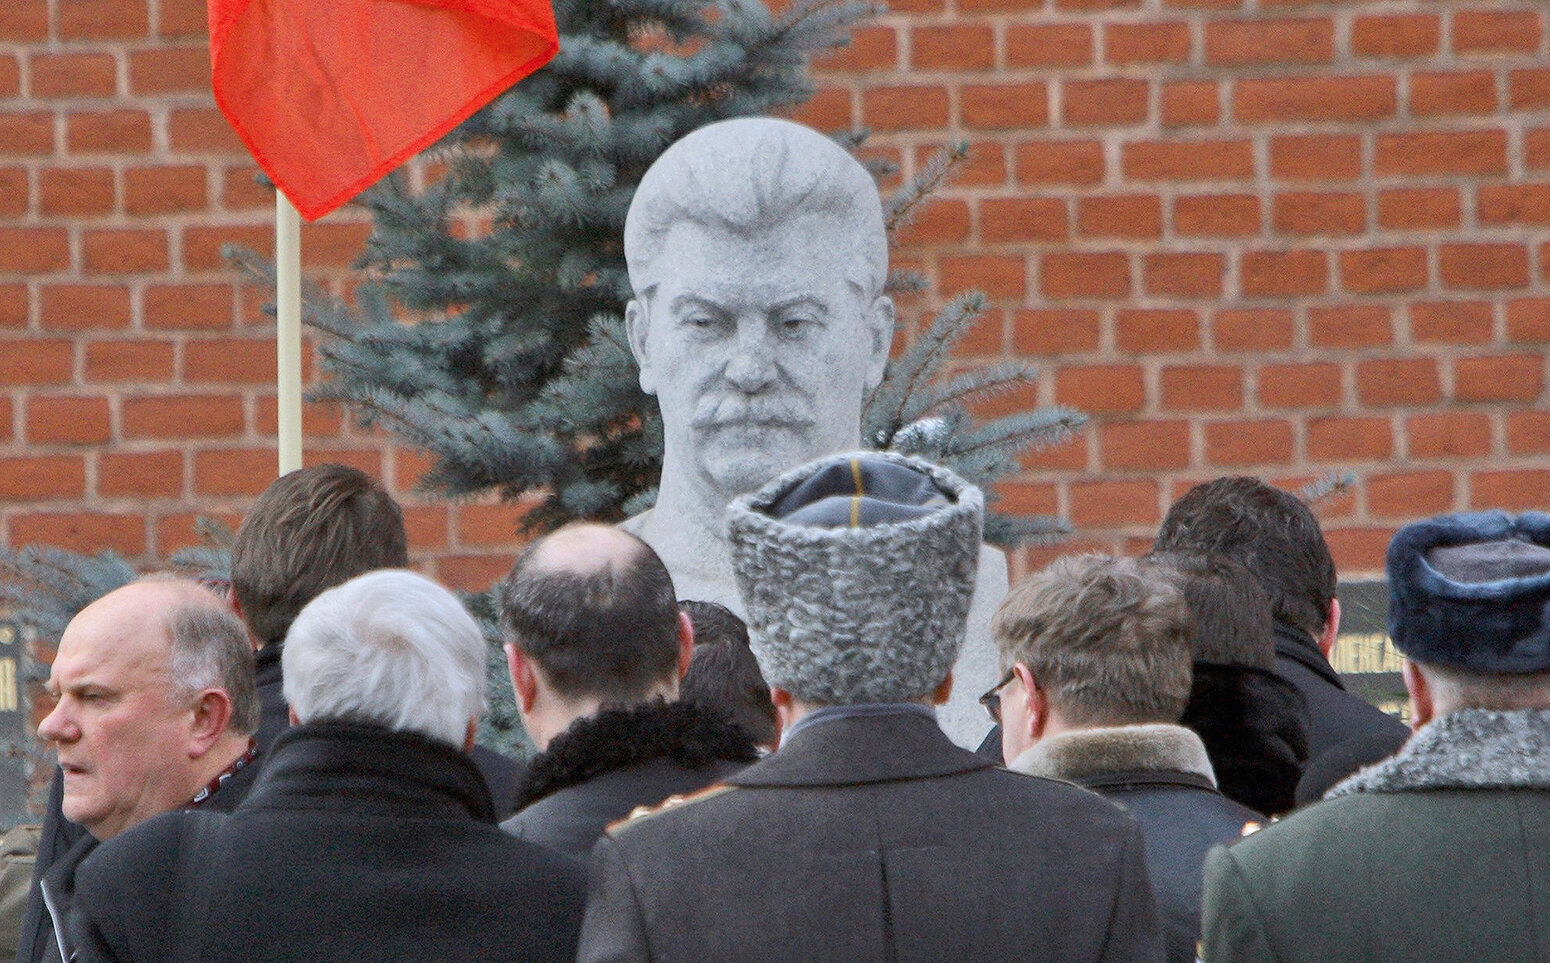 <p><strong>Сталин в Некрополе</strong></p>

<p>Бюст Сталина в Некрополе у Кремлевской стены был установлен в 1970 году. Традиционно в годовщину смерти Сталина КПРФ <a href="https://tvrain.ru/teleshow/videooftheday/zvety_stalinu-429043/" target="_blank">возлагает </a>цветы к памятнику.&nbsp;Сталин умер 5 марта 1953 года. а 9 марта он был похоронен в&nbsp;Мавзолее на Красной площади. В 1961 году в обстановке секретности его перезахоронили за Мавзолеем.&nbsp;В 1970 году на могиле установлен памятник работы скульптора Николая Томского.</p>